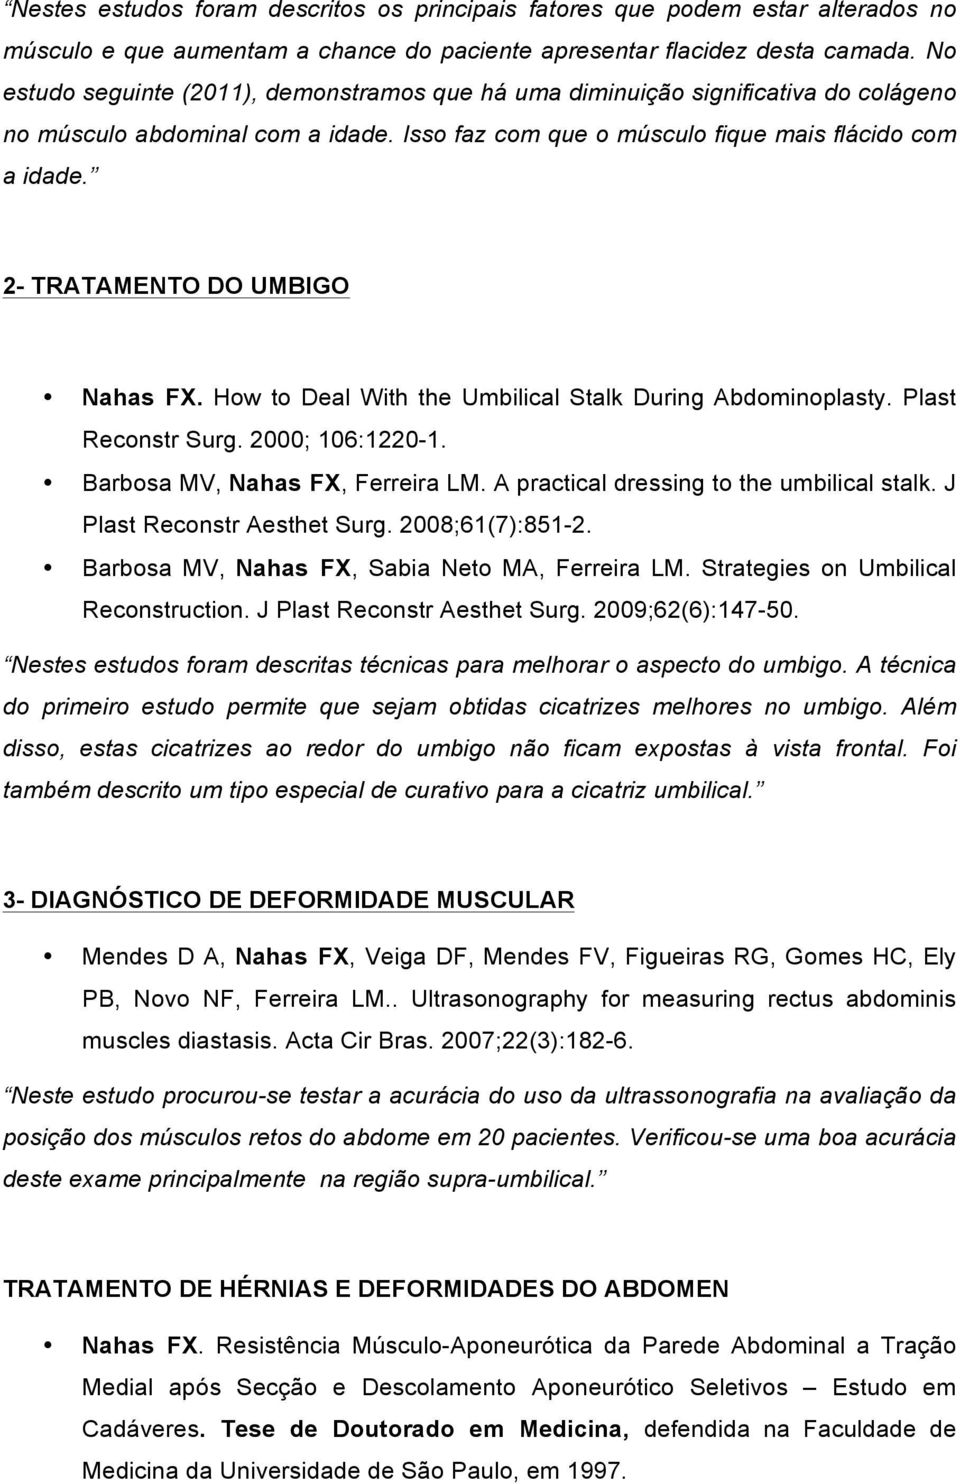 2- TRATAMENTO DO UMBIGO Nahas FX. How to Deal With the Umbilical Stalk During Abdominoplasty. Plast Reconstr Surg. 2000; 106:1220-1. Barbosa MV, Nahas FX, Ferreira LM.